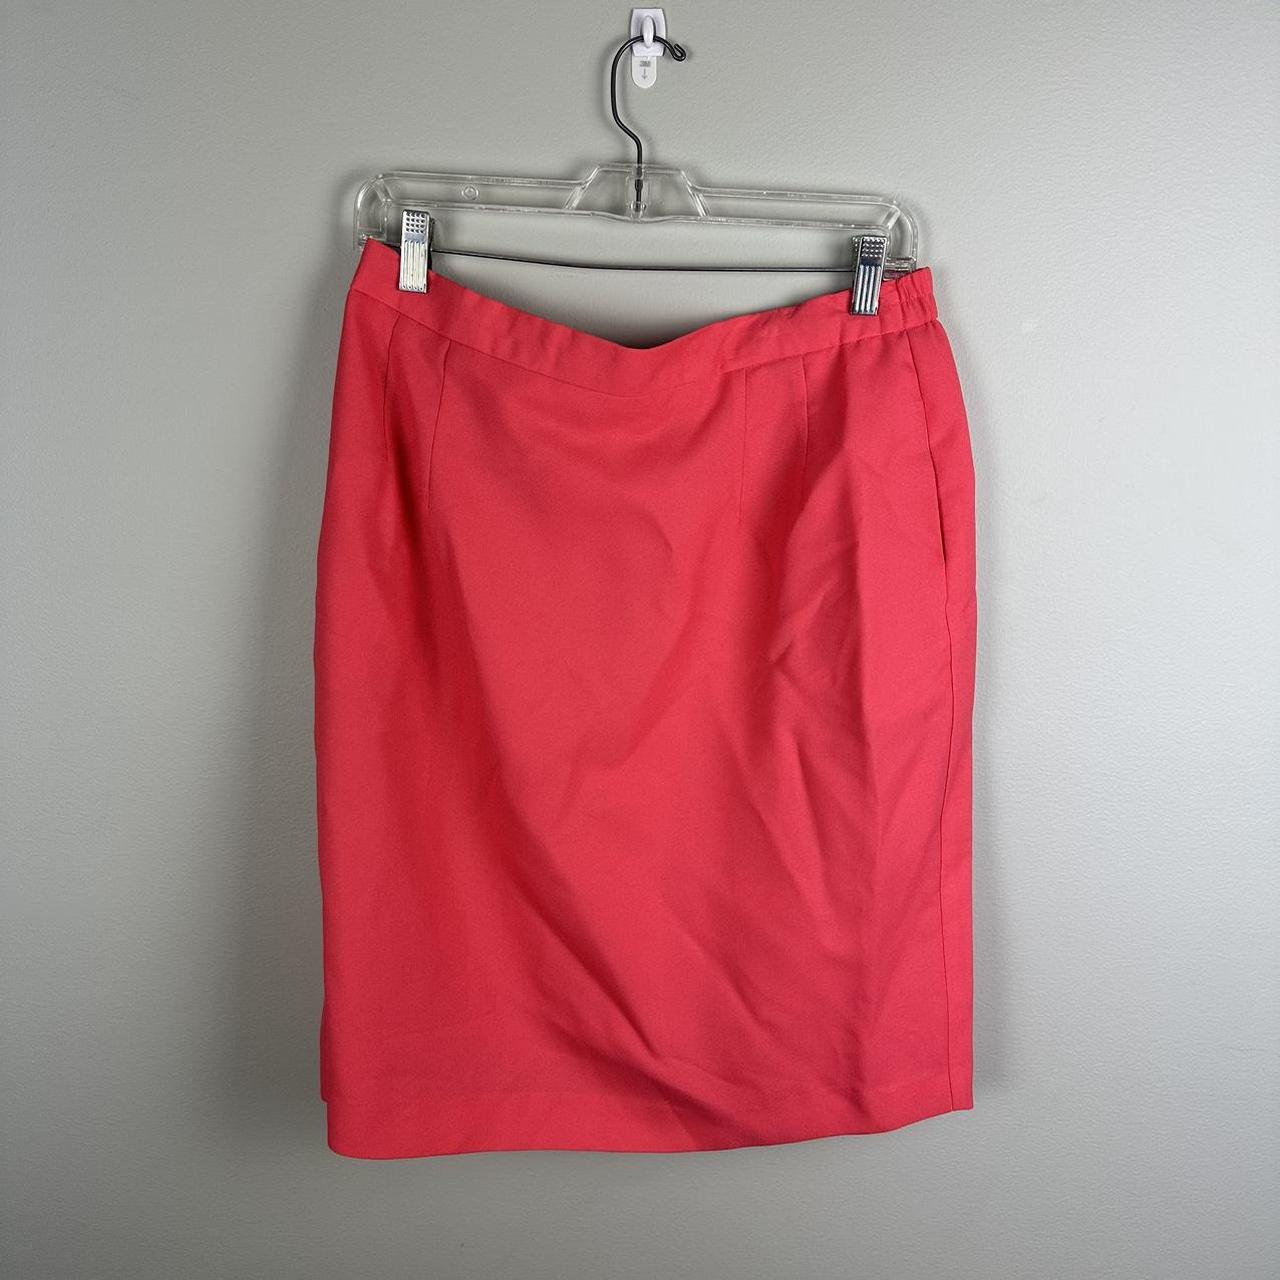 Pink pencil skirt - vintage 1980s - Depop